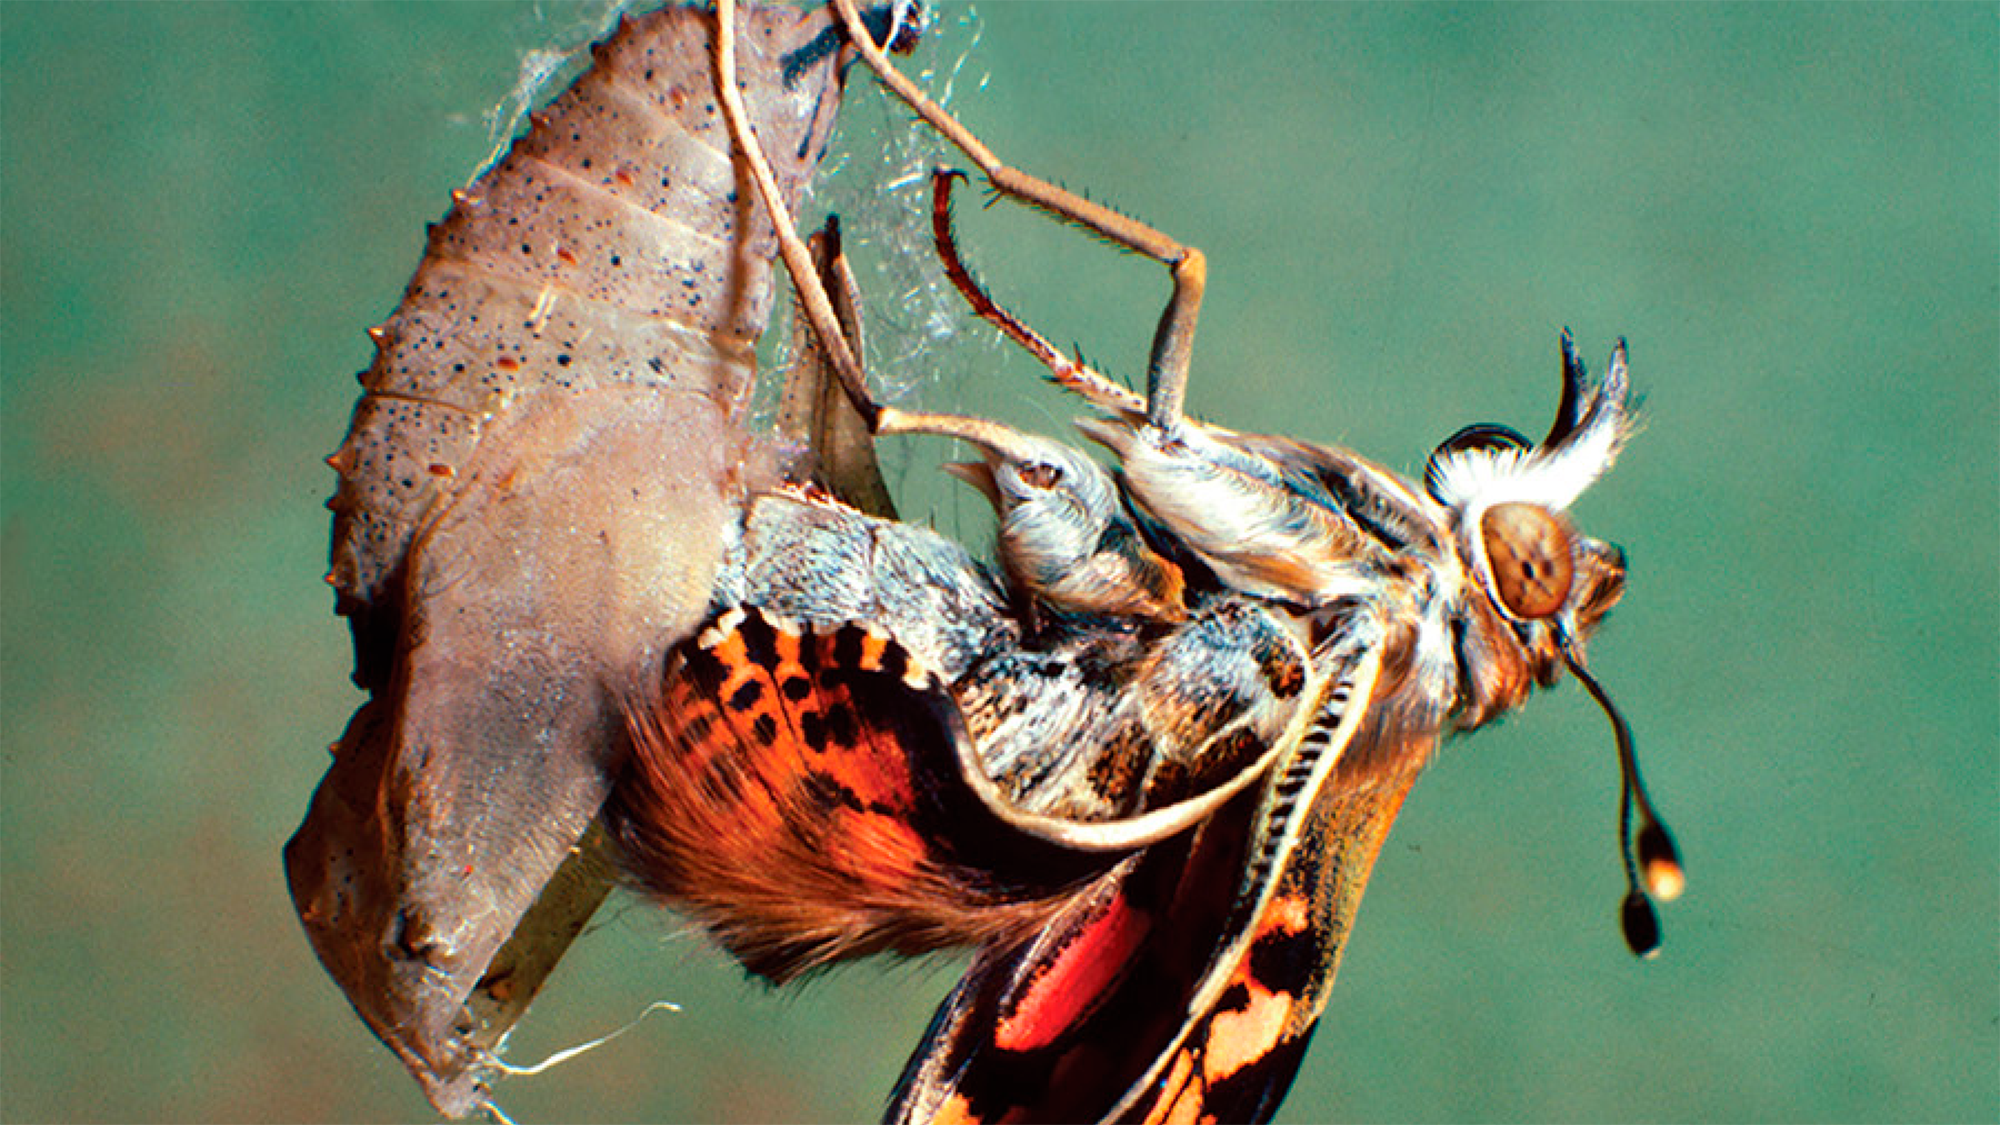 La metamorfosis es considerada uno de los procesos más innovadores en la evolución de los insectos. | Imagen extraída de la portada del libro "Insect Metamorphosis: From Natural History to Regulation of Development and Evolution".